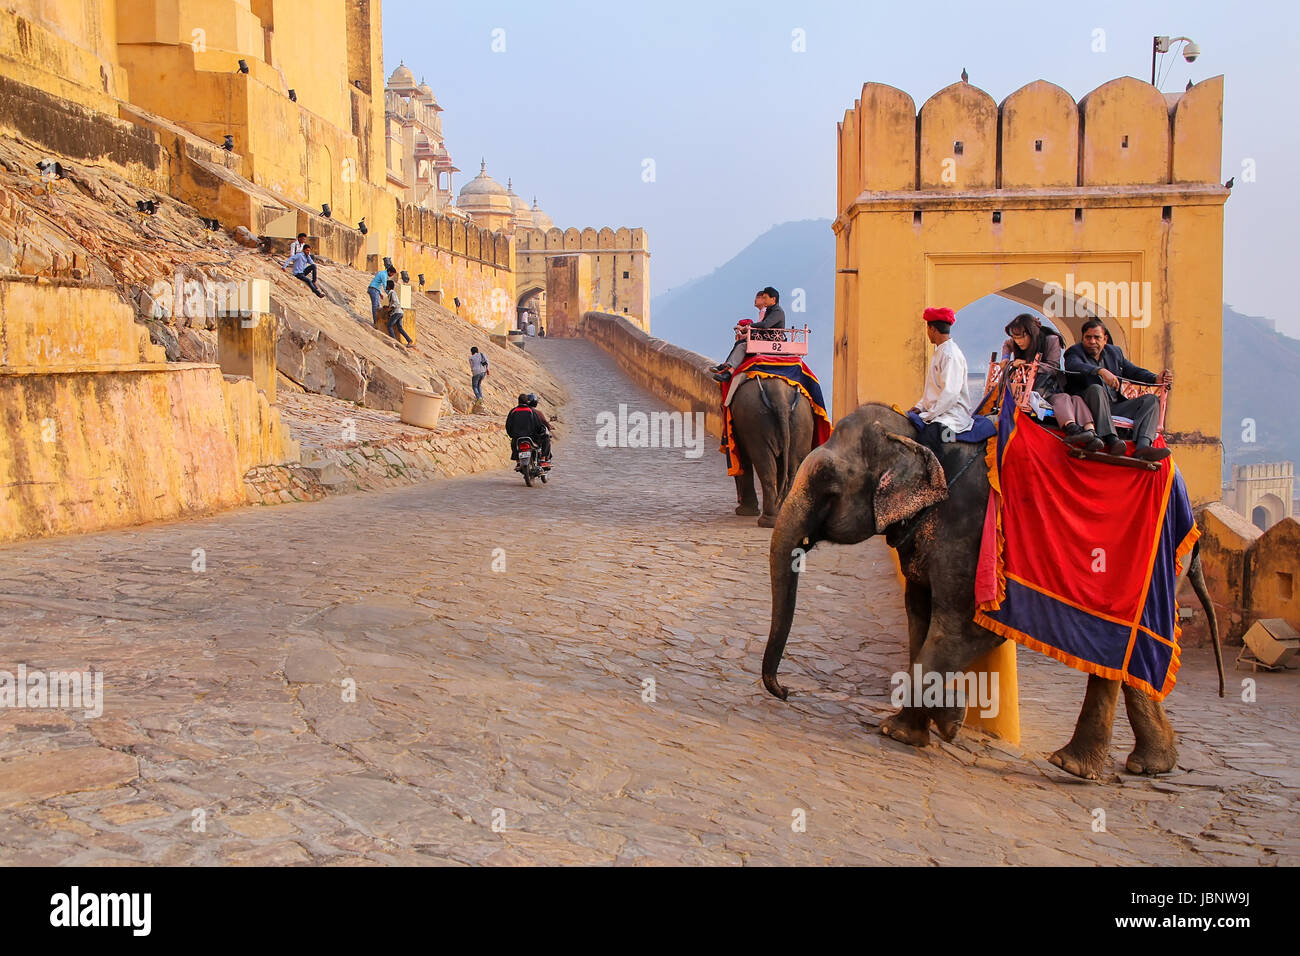 Decorado con elefantes turistas va en el camino empedrado a Fuerte Amber, cerca de Jaipur, Rajasthan, India. Los paseos en elefante son populares atracciones attrac Foto de stock